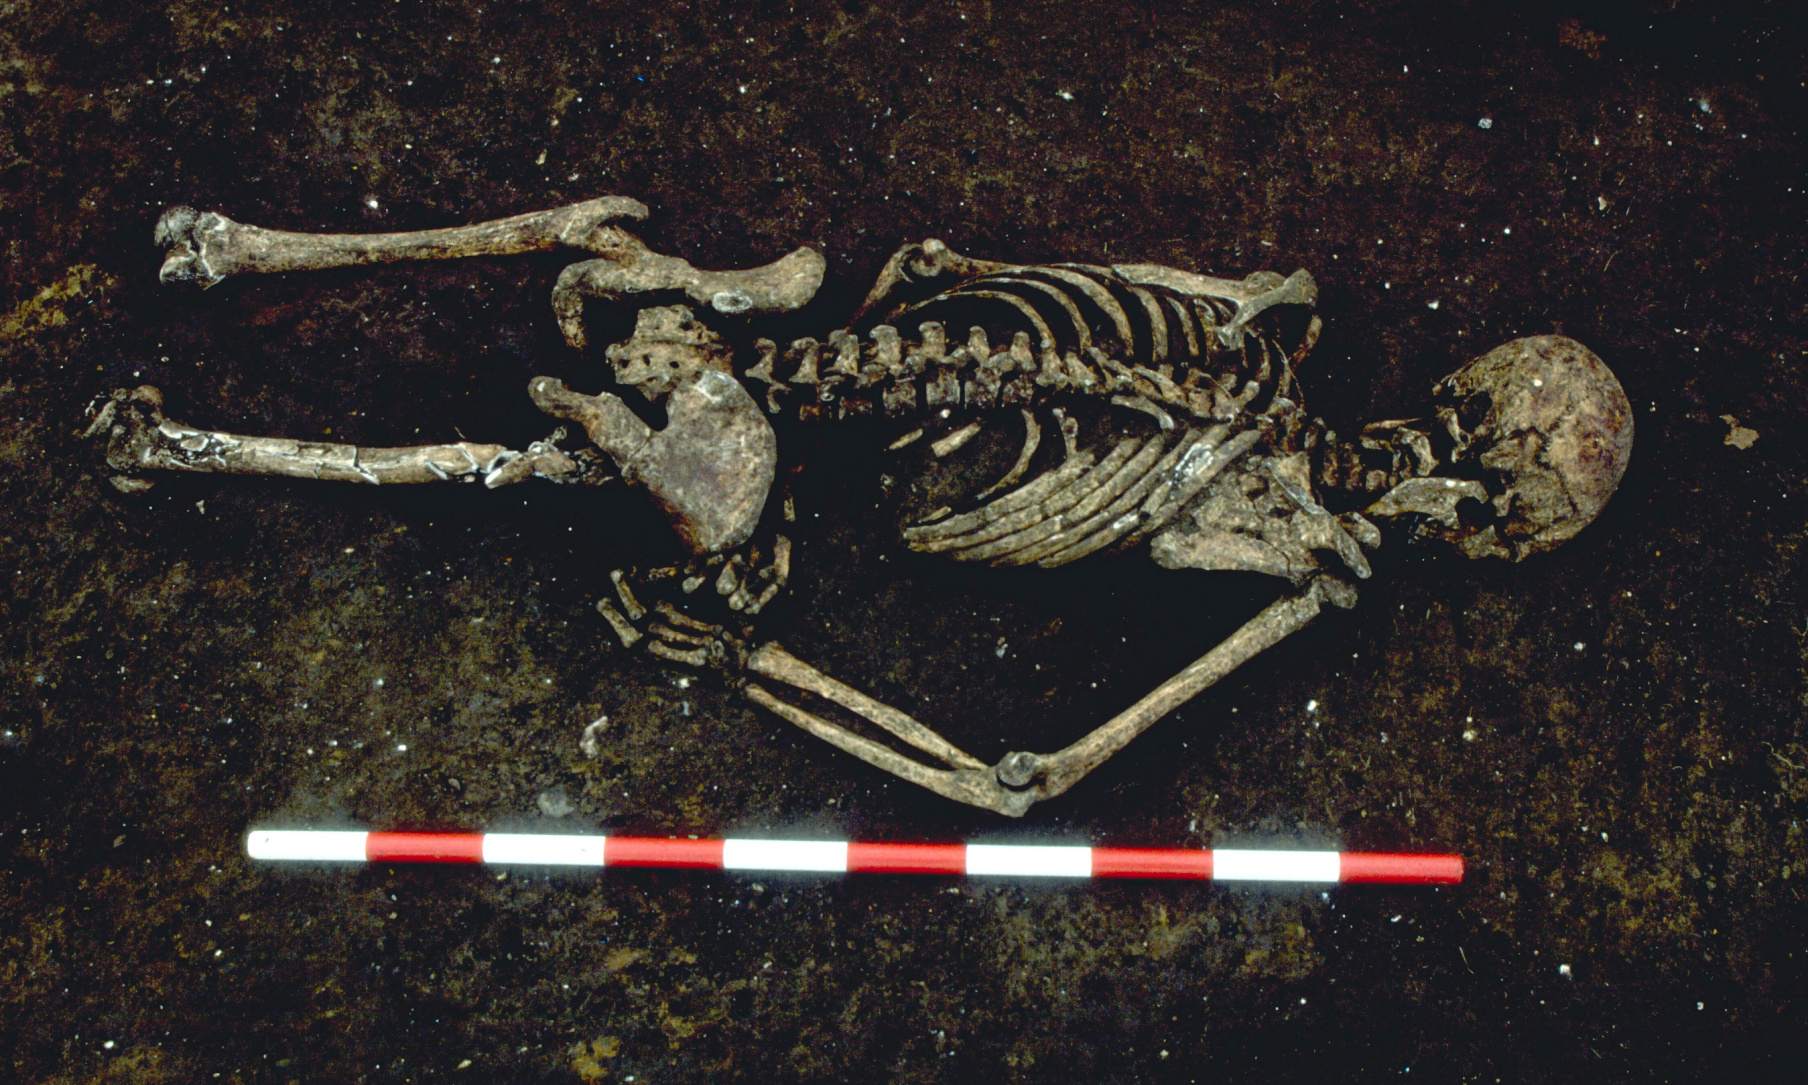 1,500 वर्षांचा सांगाडा उजवा हात असामान्य कोनात वाकलेला आढळला. त्याचा मृत्यू झाला तेव्हा त्याला बांधले गेले असावे, असे अभ्यास संशोधकांचे म्हणणे आहे. आधुनिक काळातील विकासामुळे त्याचे खालचे शरीर नष्ट झाले.